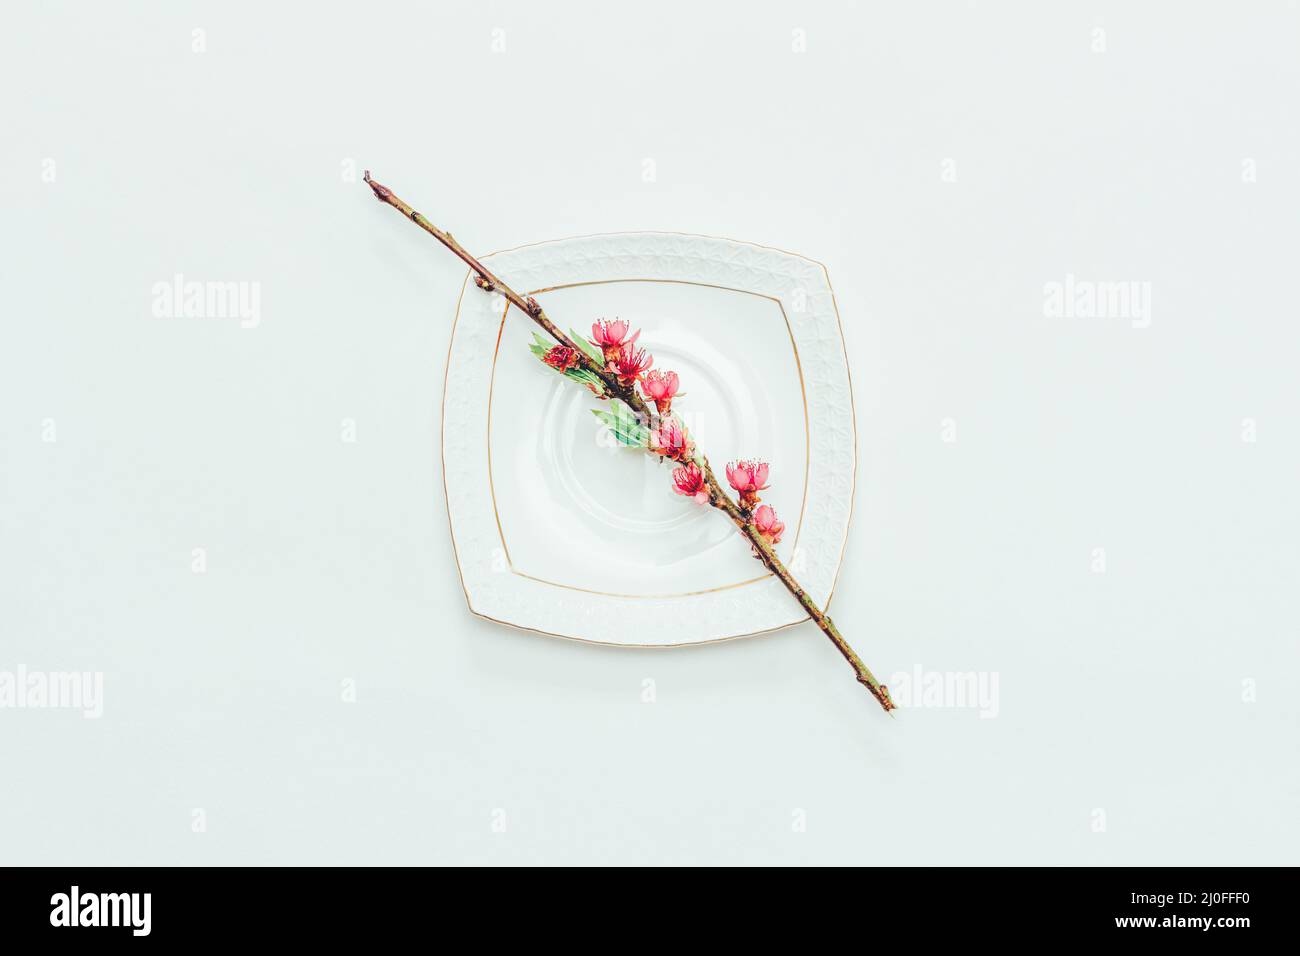 Branche fleurie d'une pêche aux fleurs roses sur une soucoupe blanche sur fond blanc gros plan Banque D'Images